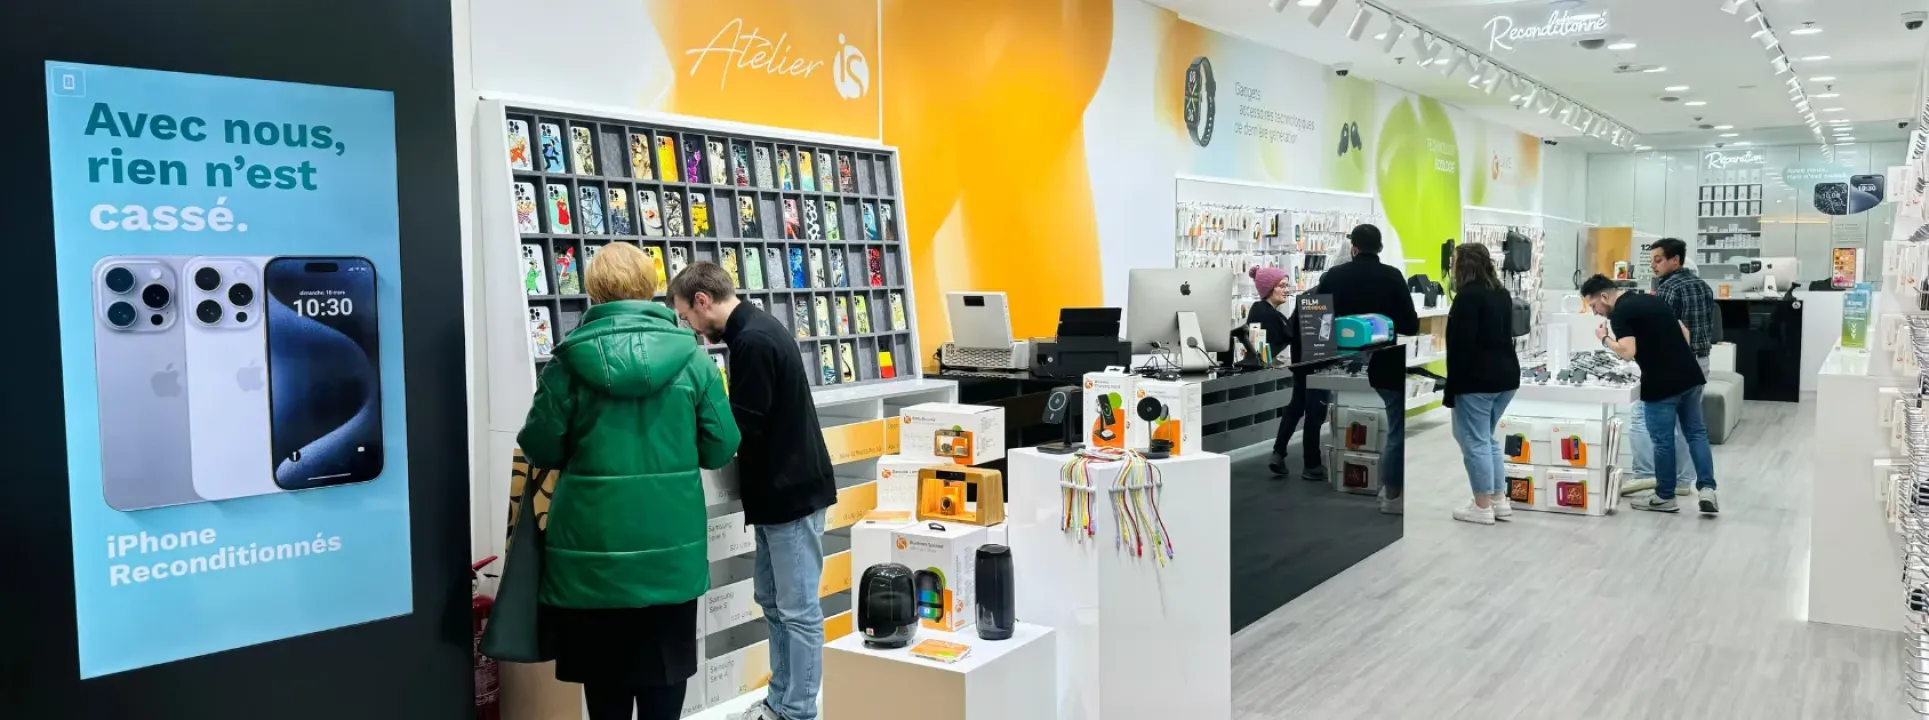 iServices abre quinta loja na Bélgica com o novo Atelier iS